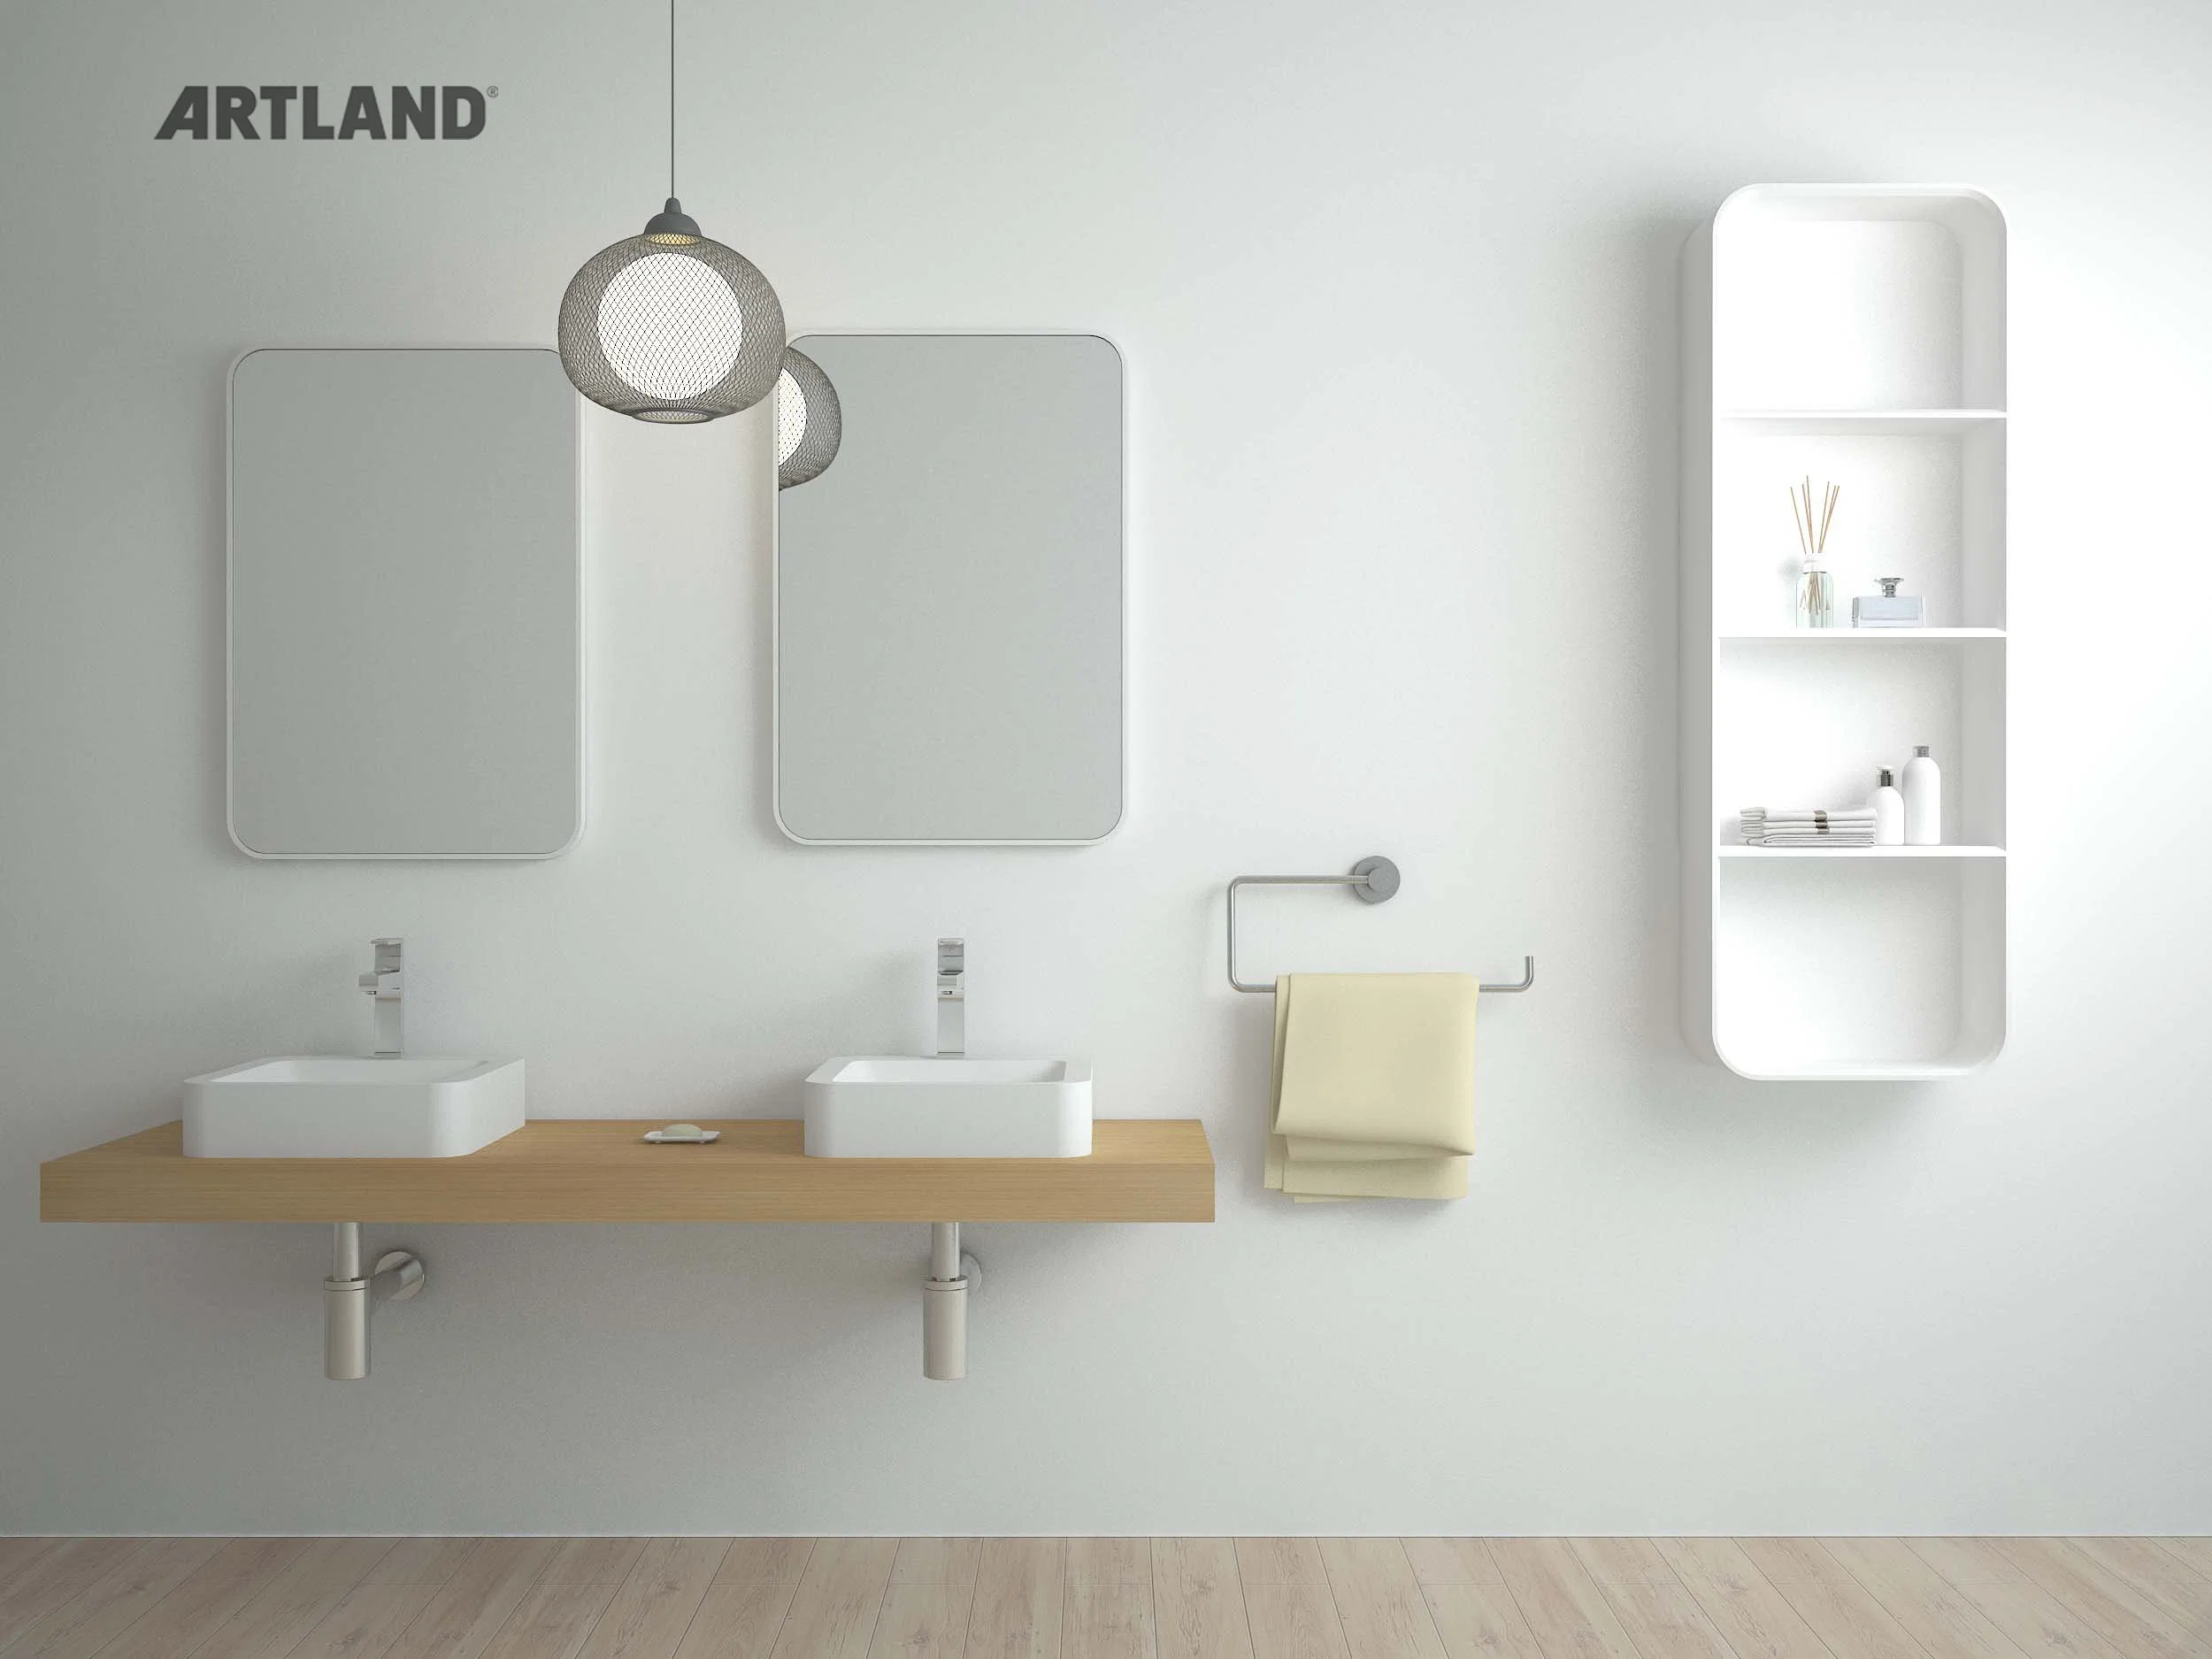 European Market Modern Design Hot Sale Vanity Wash Basin Bathroom Sink for Cabinet